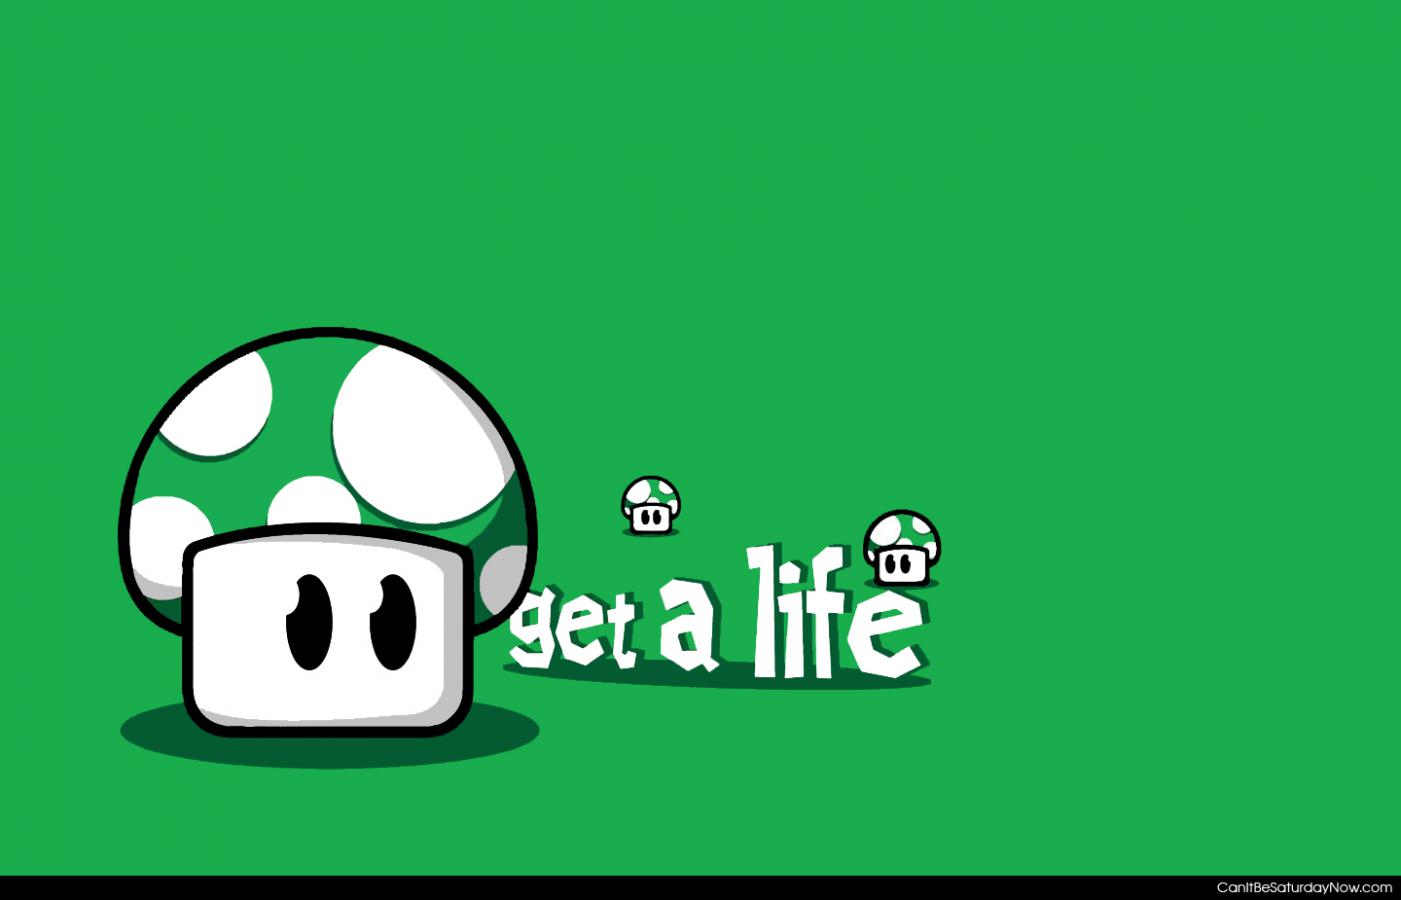 Get a life - just get a life